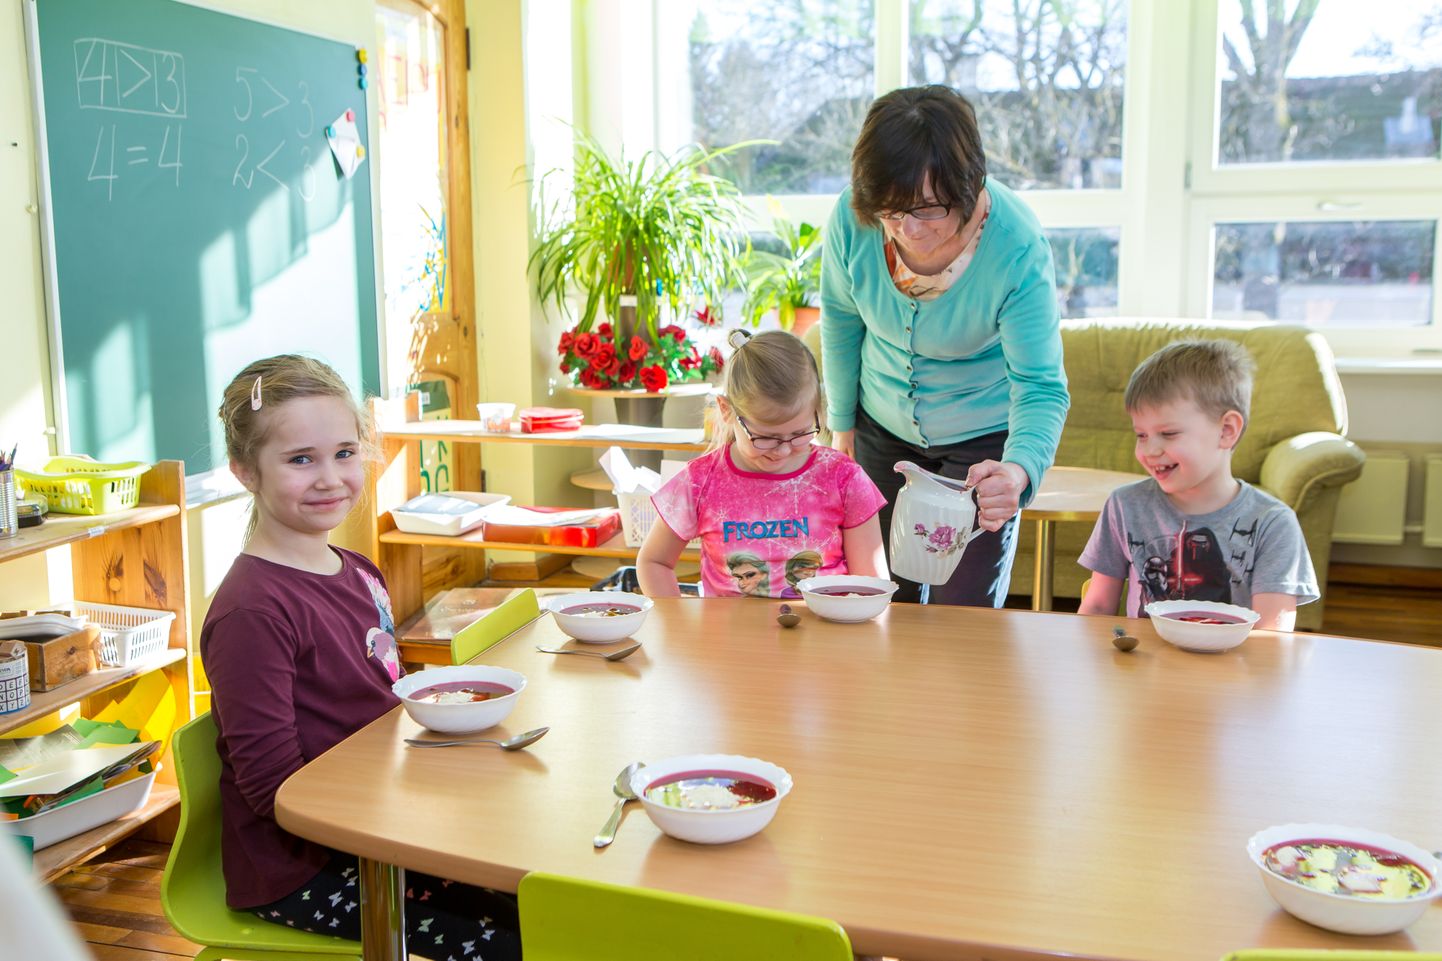 HEAD ISU: 283 inimese allkirjaga soovitakse kaotada Saaremaal lasteaia kohatasu ja hüvitada kõikidele lastele toiduraha võrdselt ühe euro ulatuses.